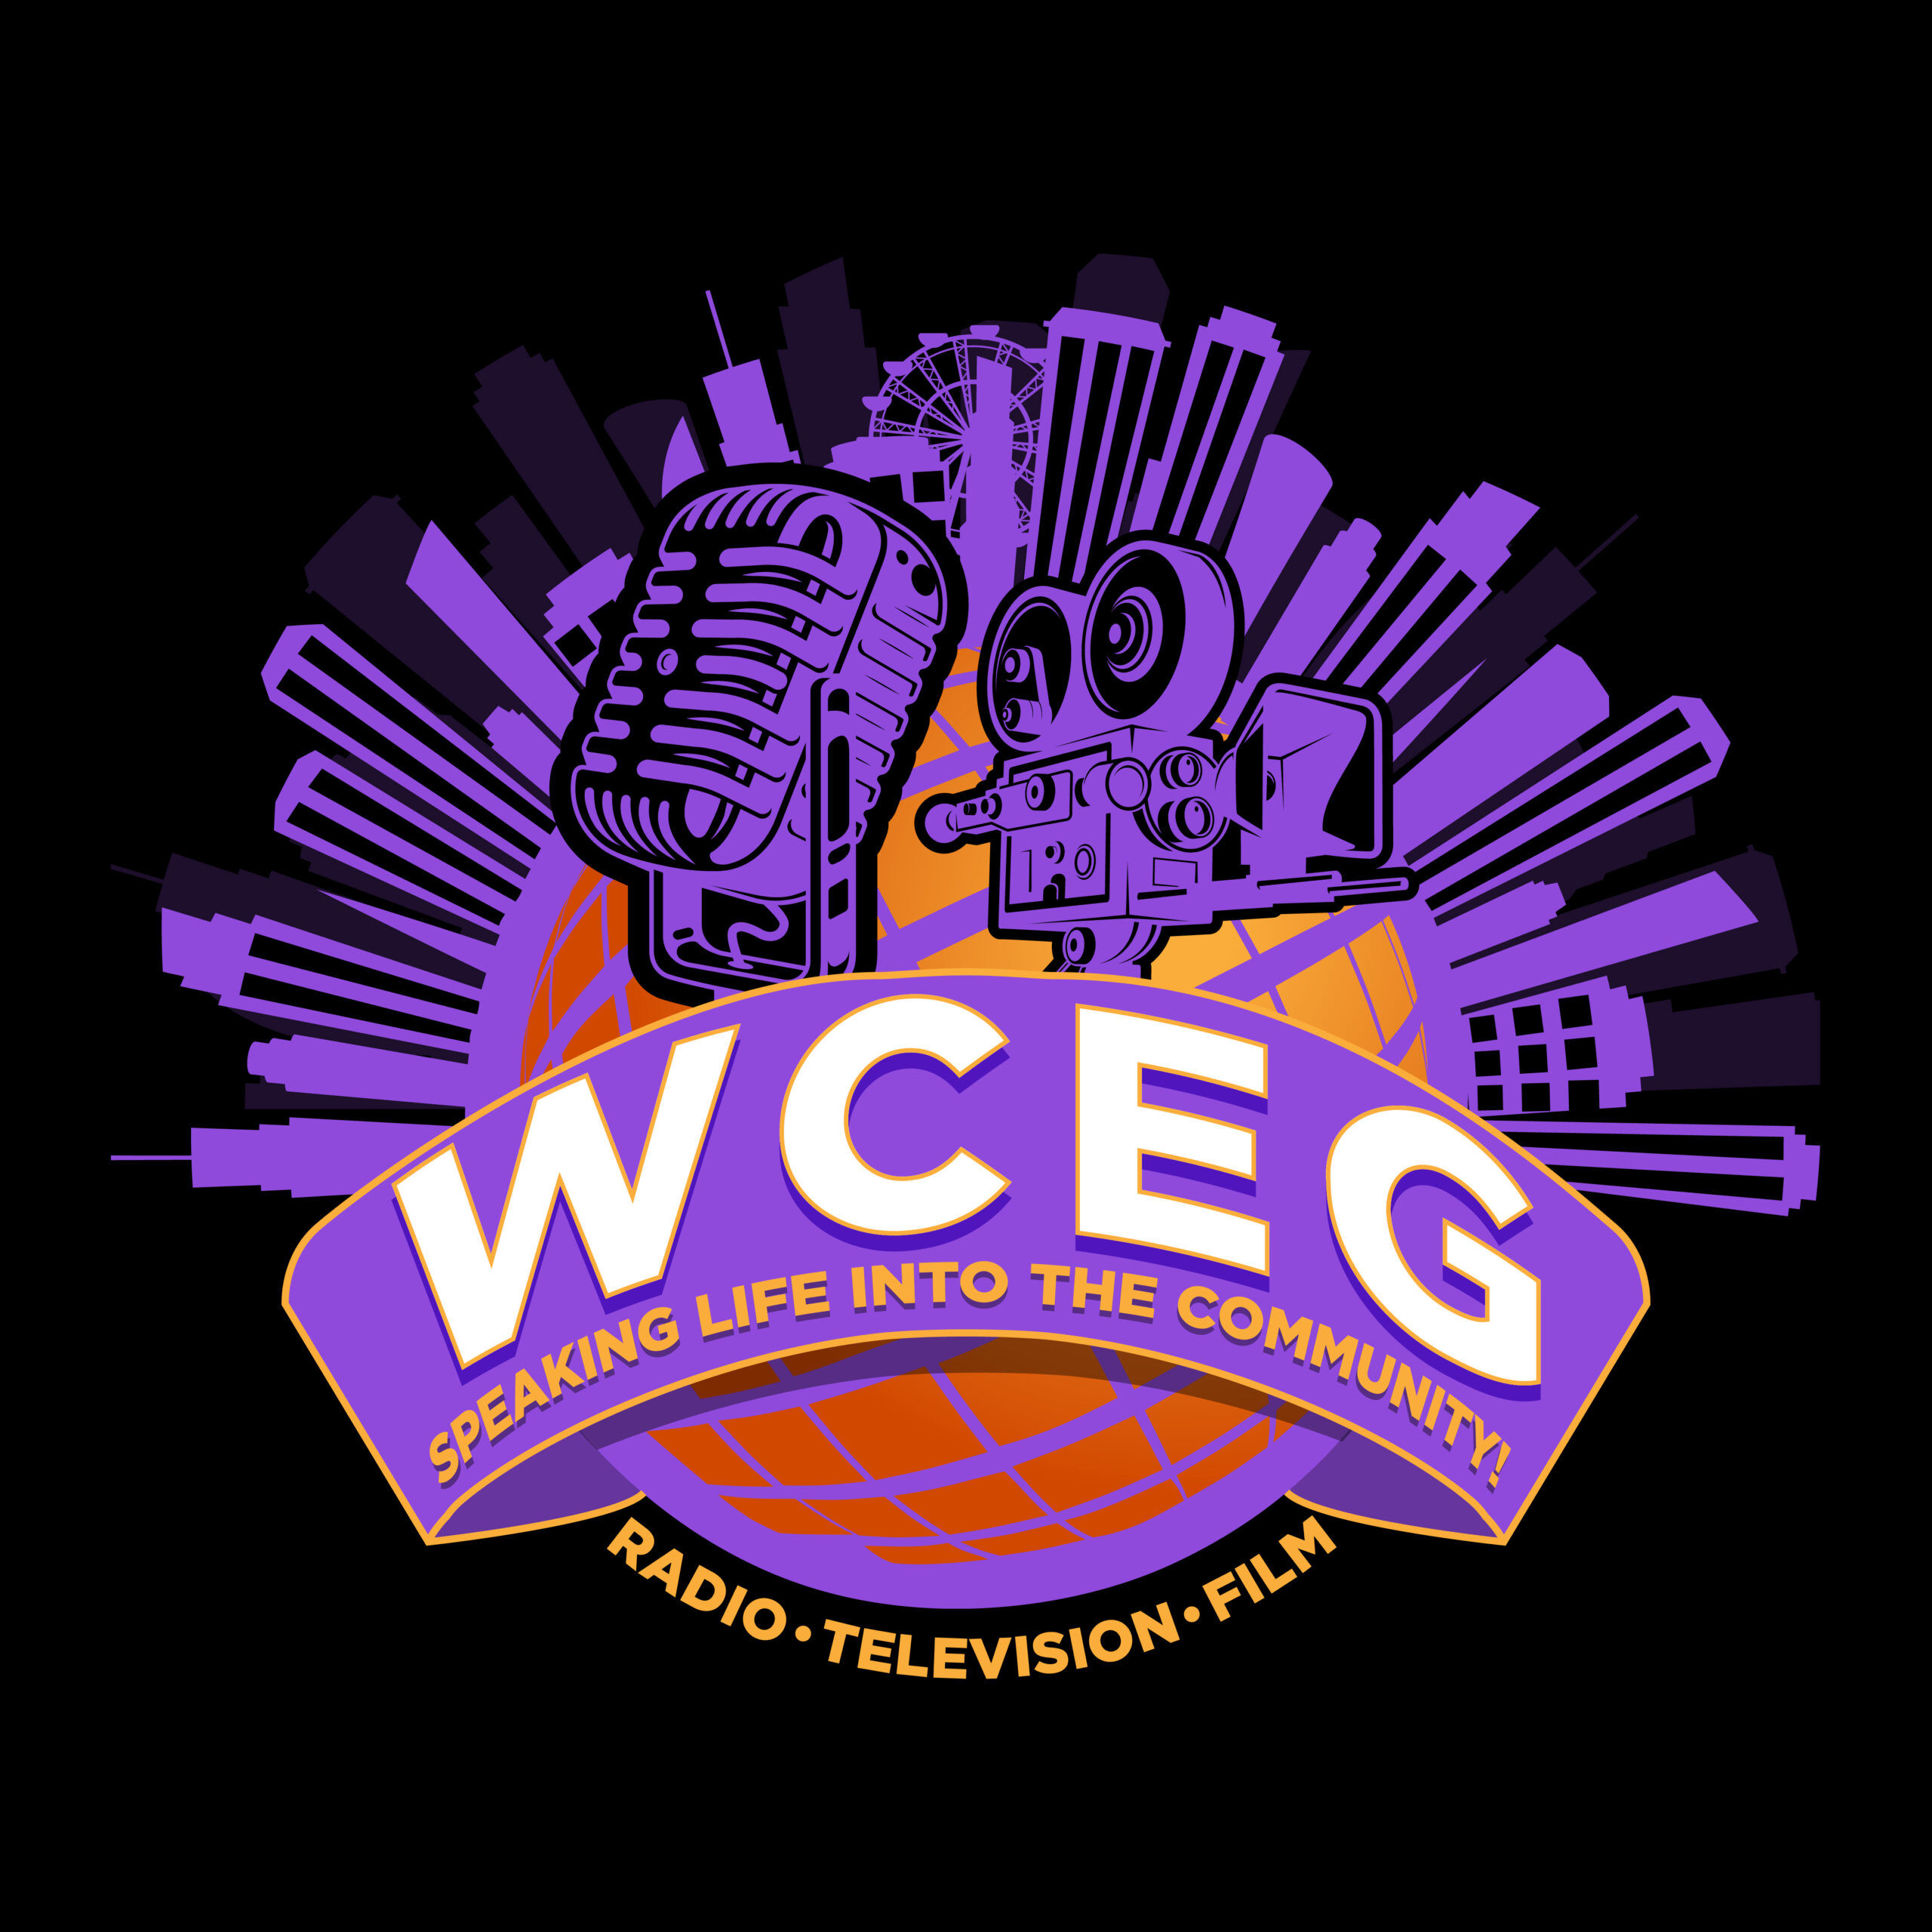 WCEG Talk Radio